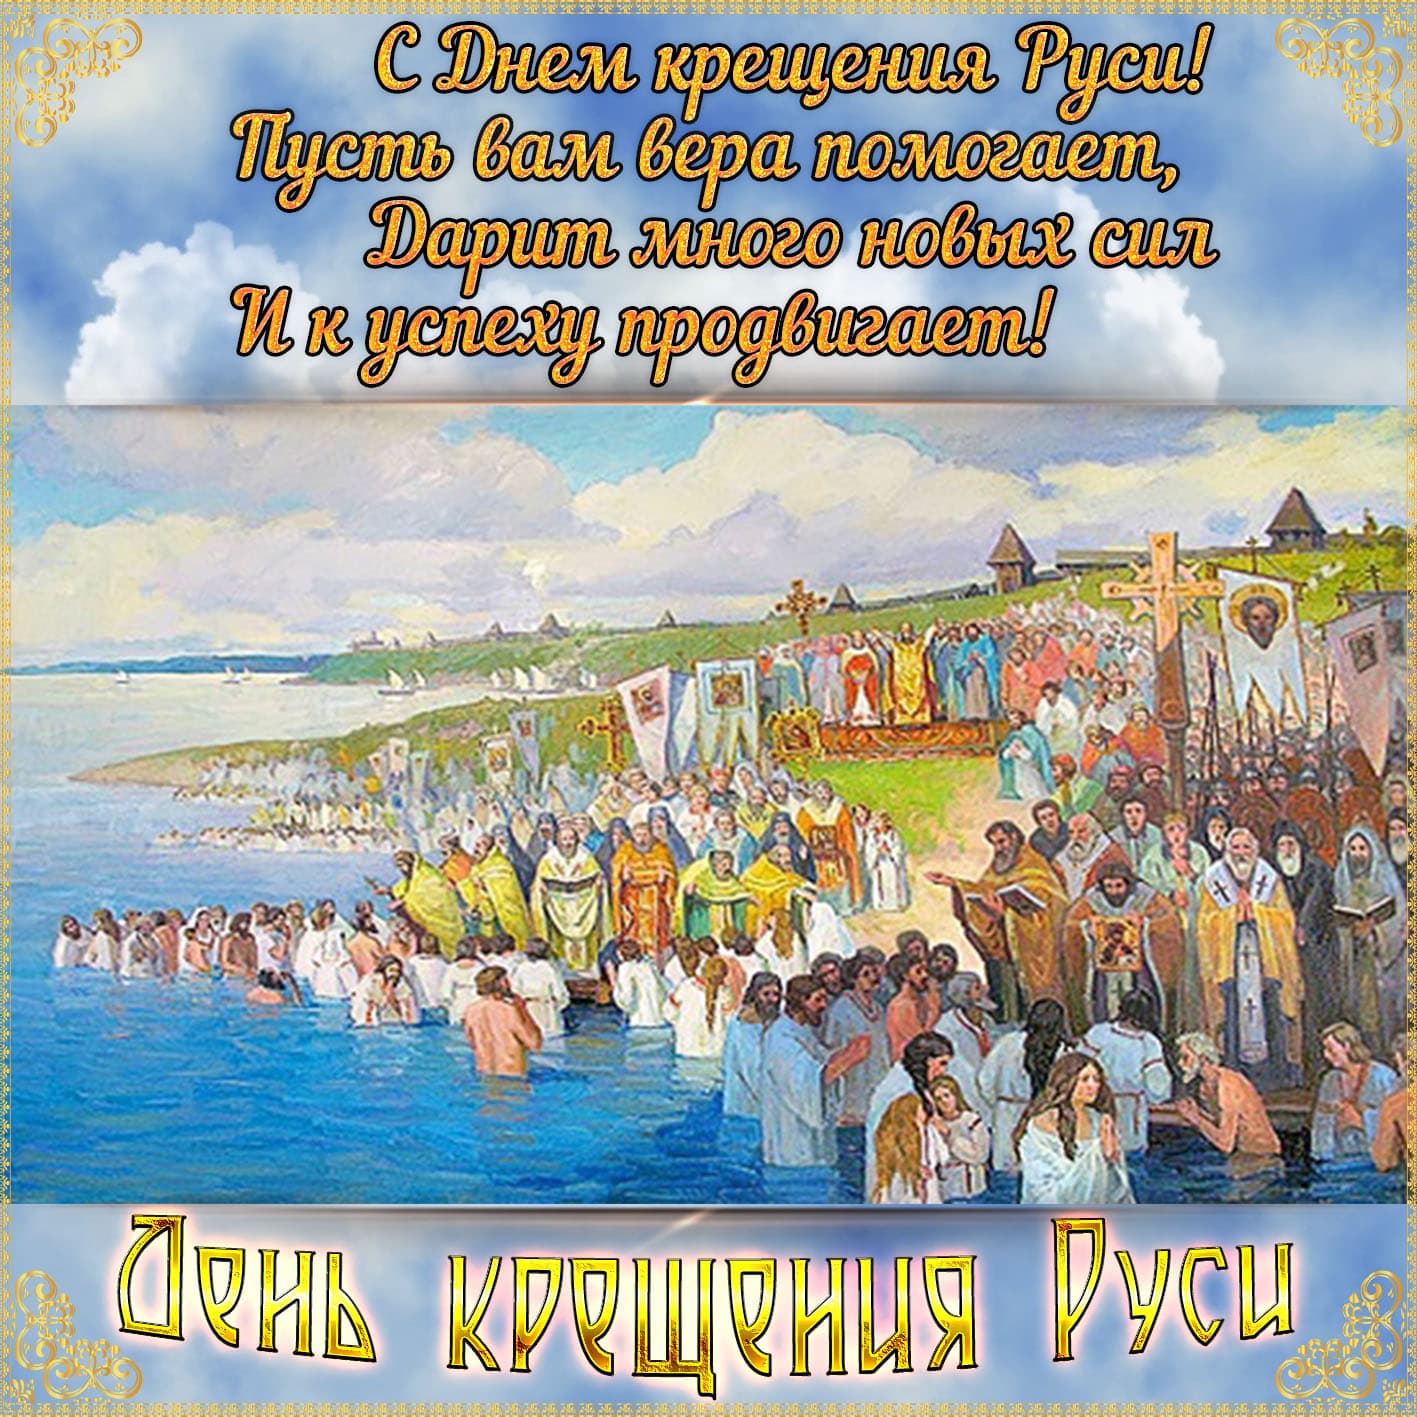 Открытки с днём крещения Руси 28 июля и князя Владимира